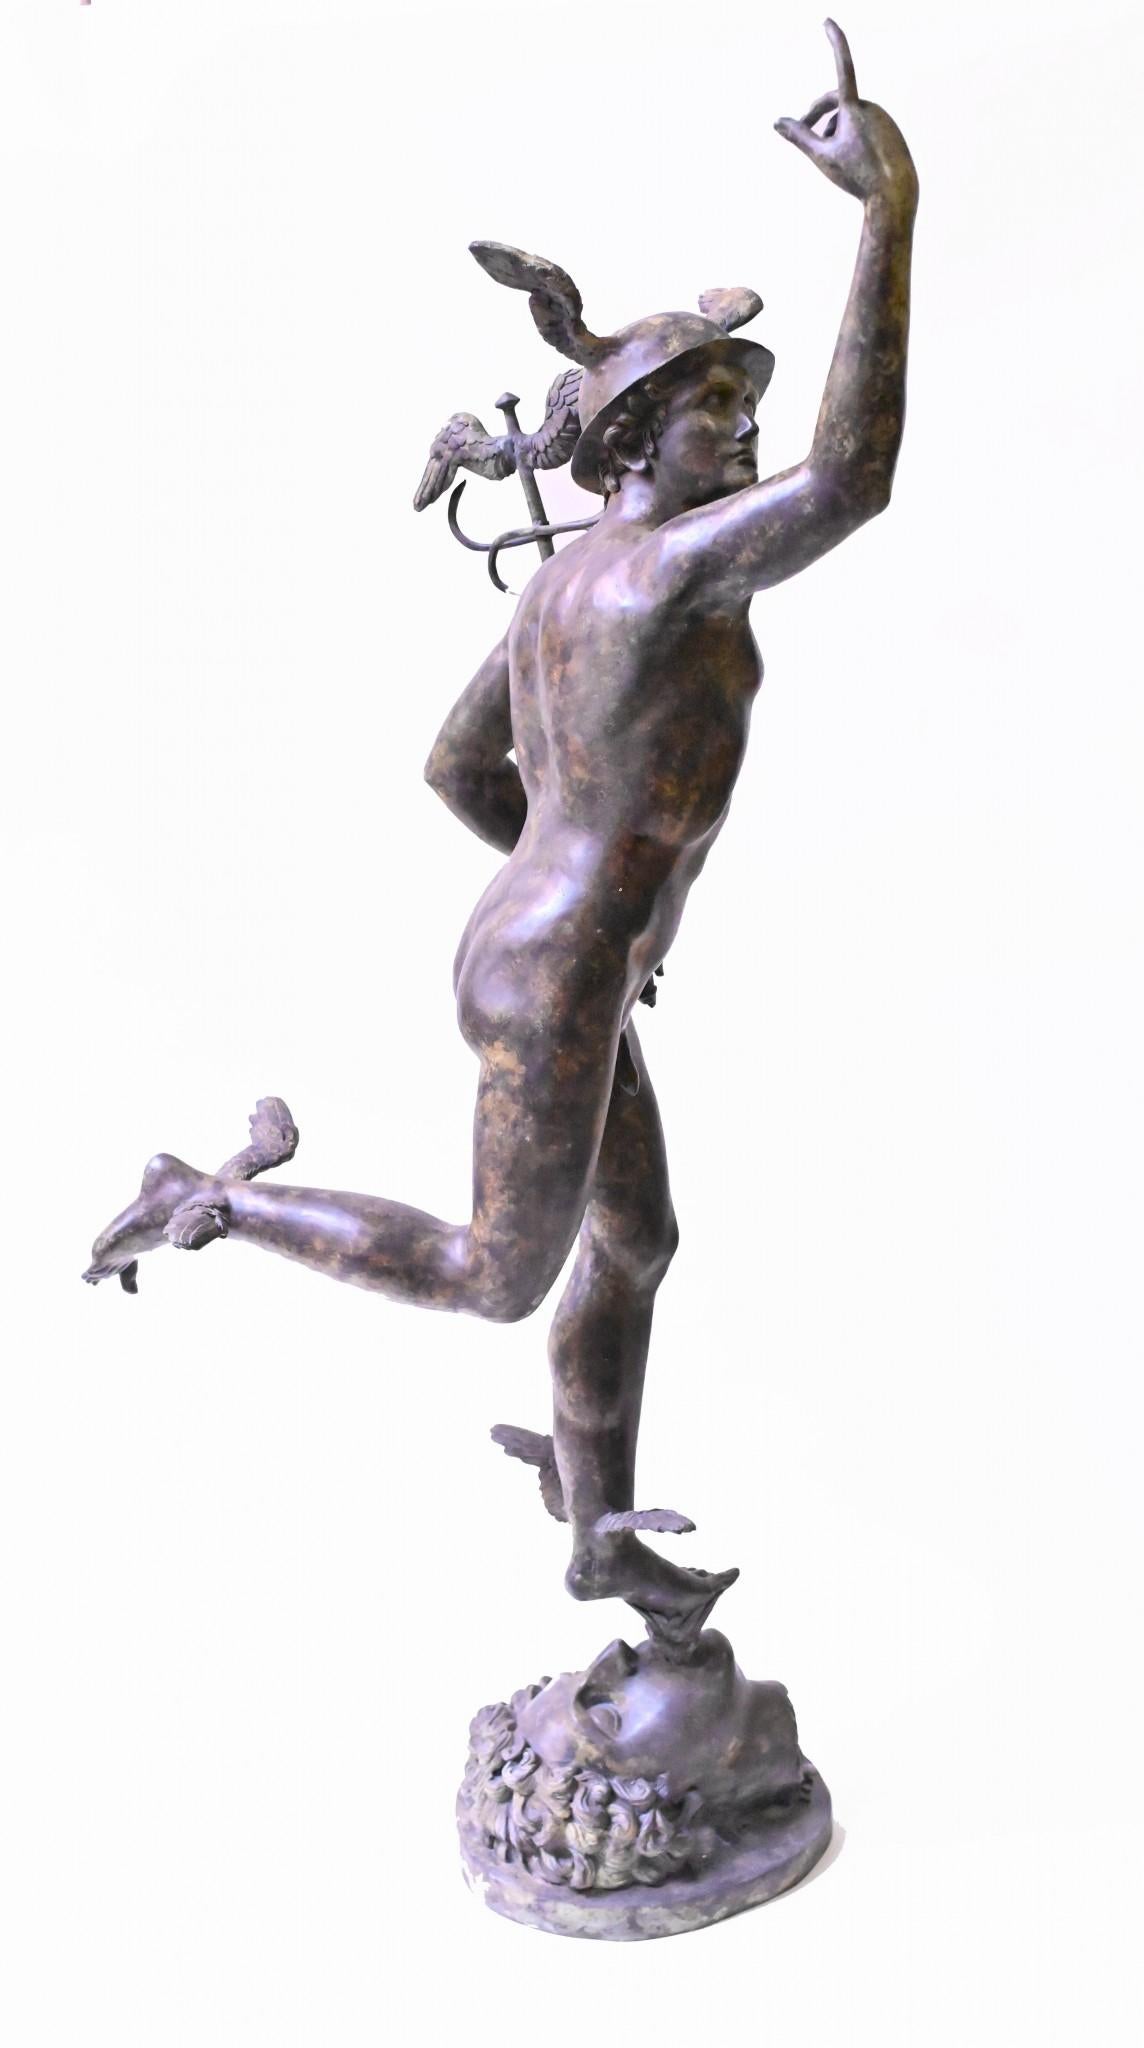 Incroyable statue géante en bronze de la célèbre statue de Mercure
La version originale a été réalisée par l'artiste italien Giambologna
Cette version mesure plus d'un mètre quatre-vingt-dix, soit près de deux mètres.
Mercure était le messager des